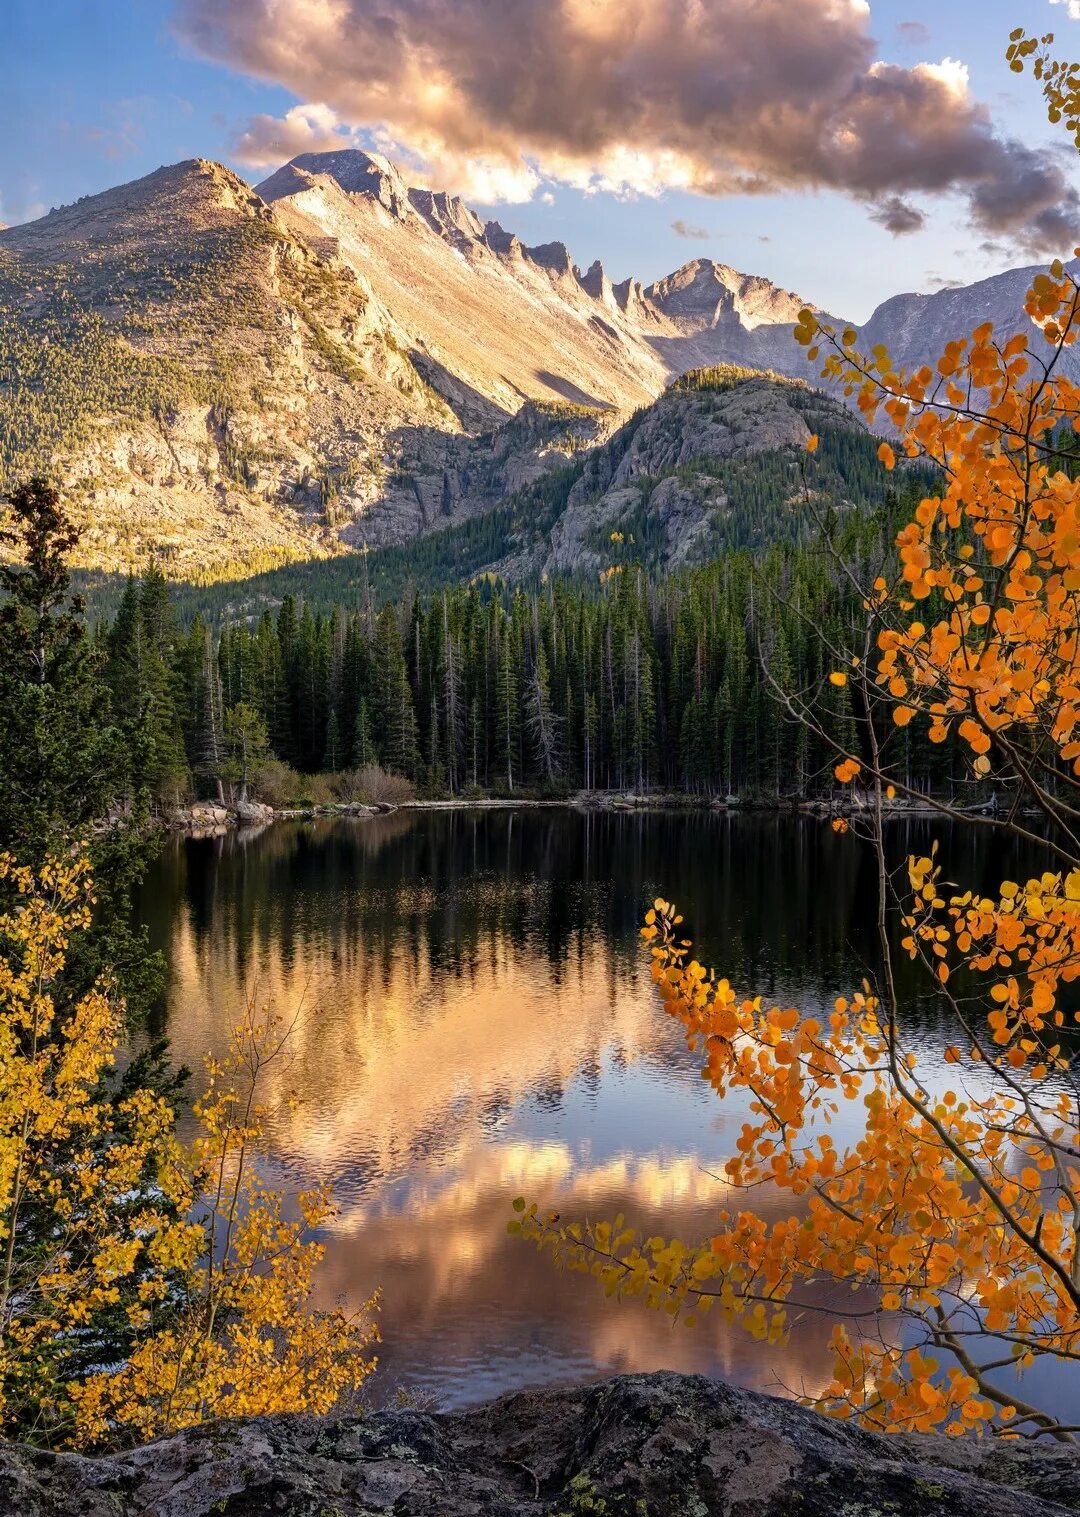 Заставка на телефон природа вертикальные. Беар Маунтин парк. Осень в горах. Красивые пейзажи природы. Осенний горный пейзаж.